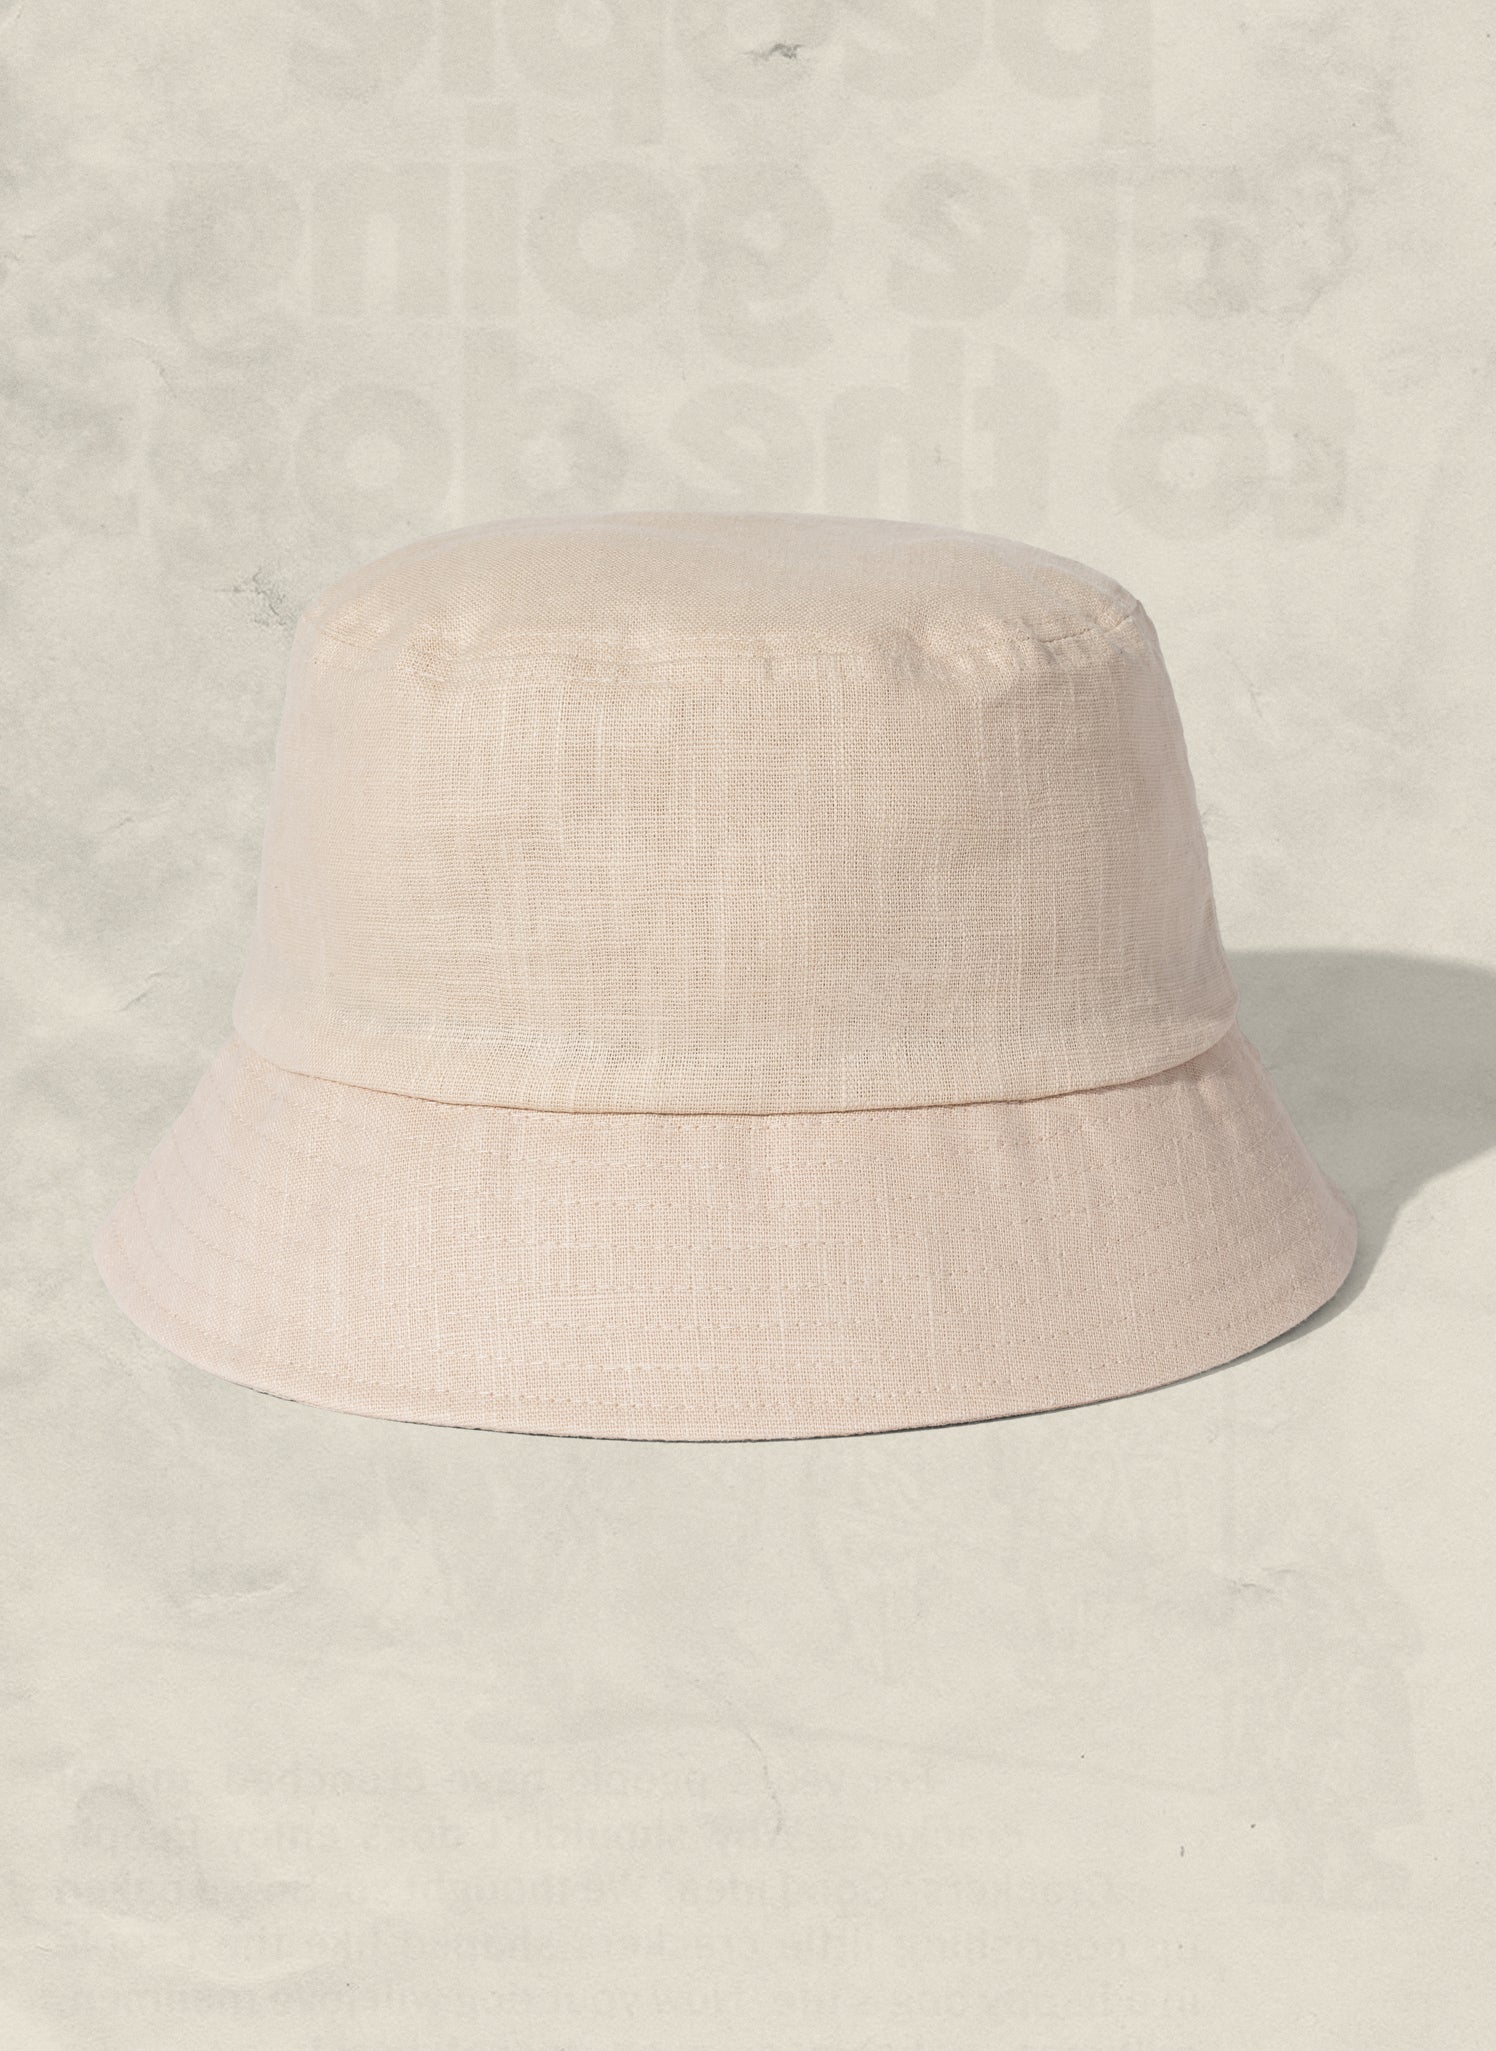 Weld Mfg Hemp Bucket Hat - Vintage Inspired Beach Sun Hat - Cream